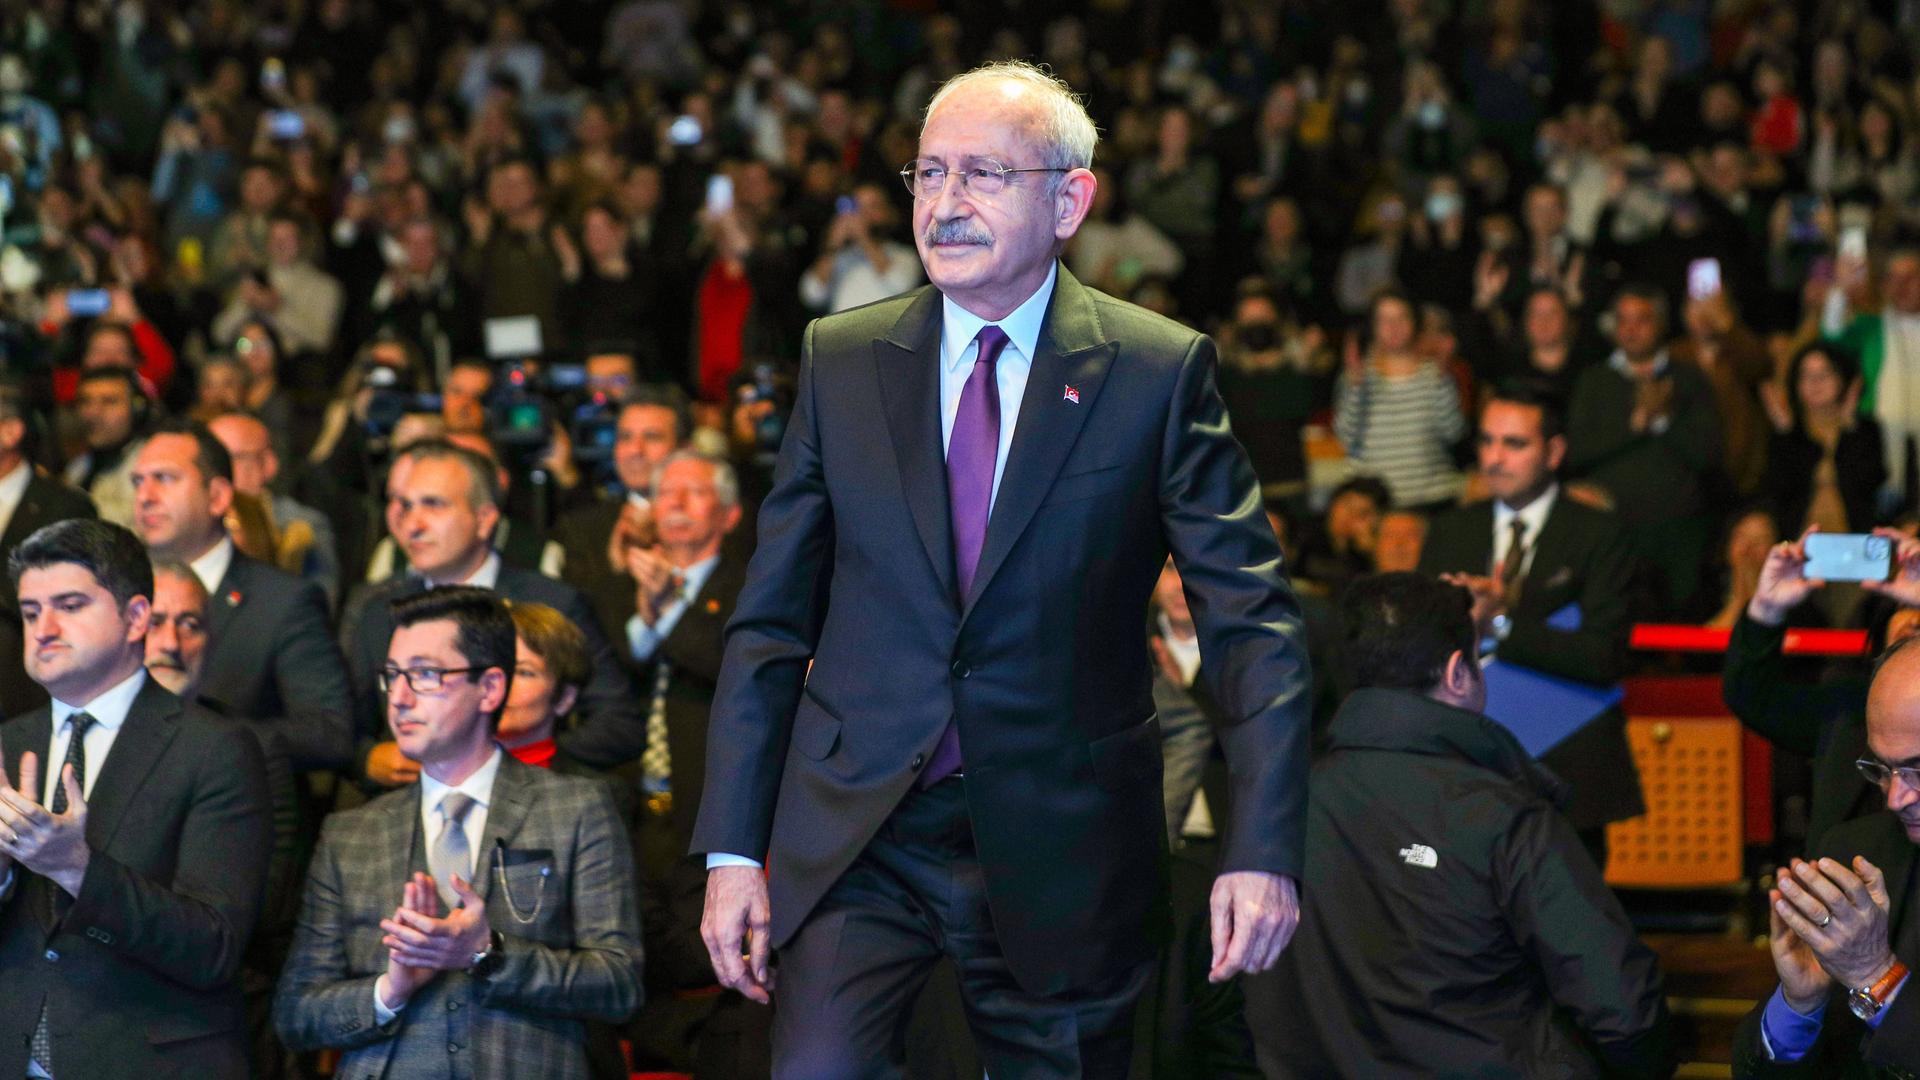 Kemal Kilicdaroglu, Vorsitzender der sozialdemokratischen CHP, steht mit dem Rücken gewandt vor einer Menschenmenge, die applaudiert.